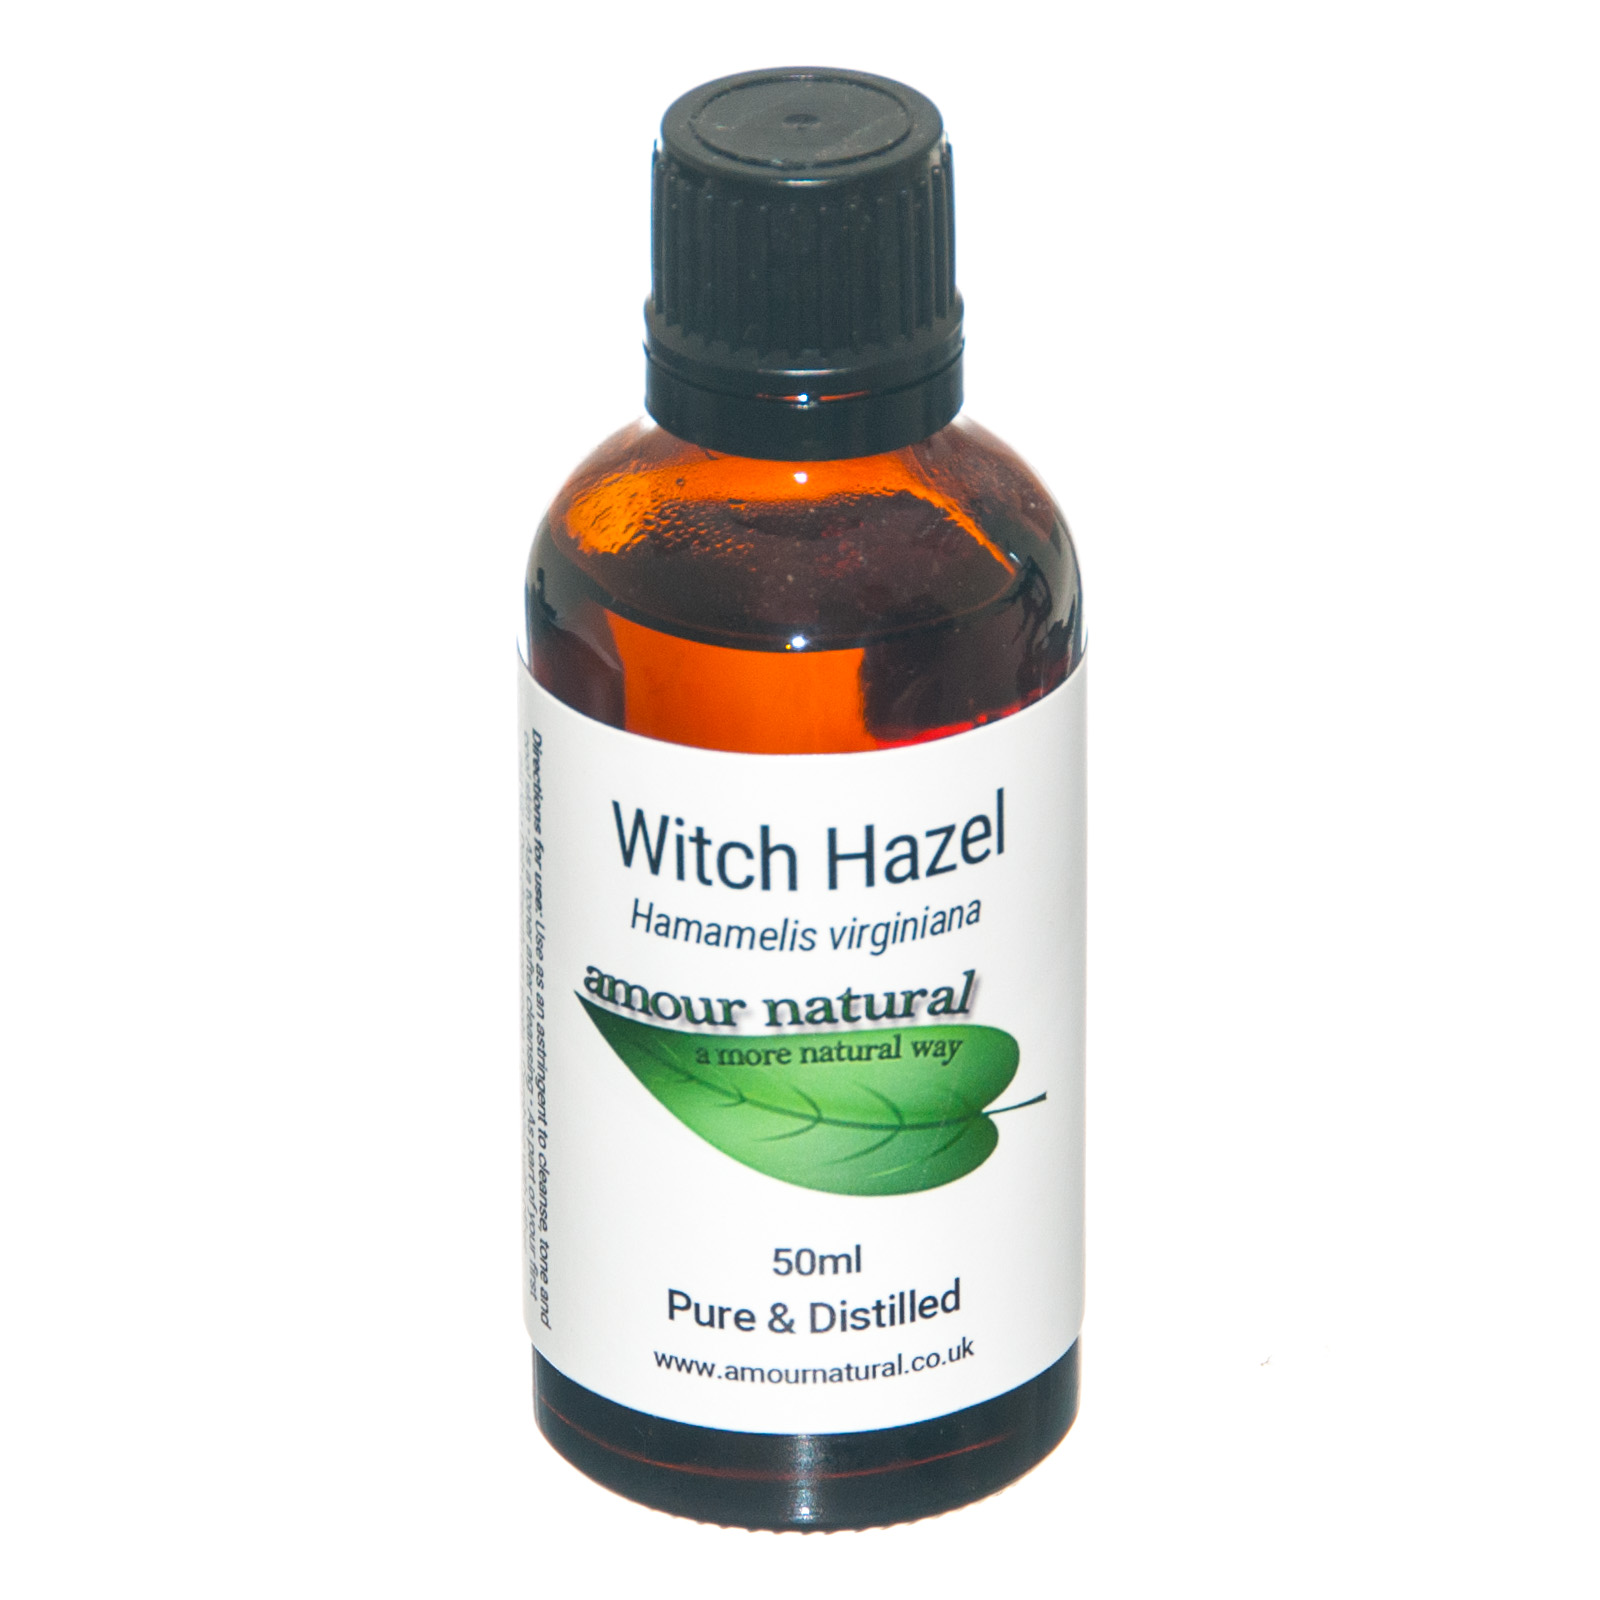 Witch Hazel distilled water